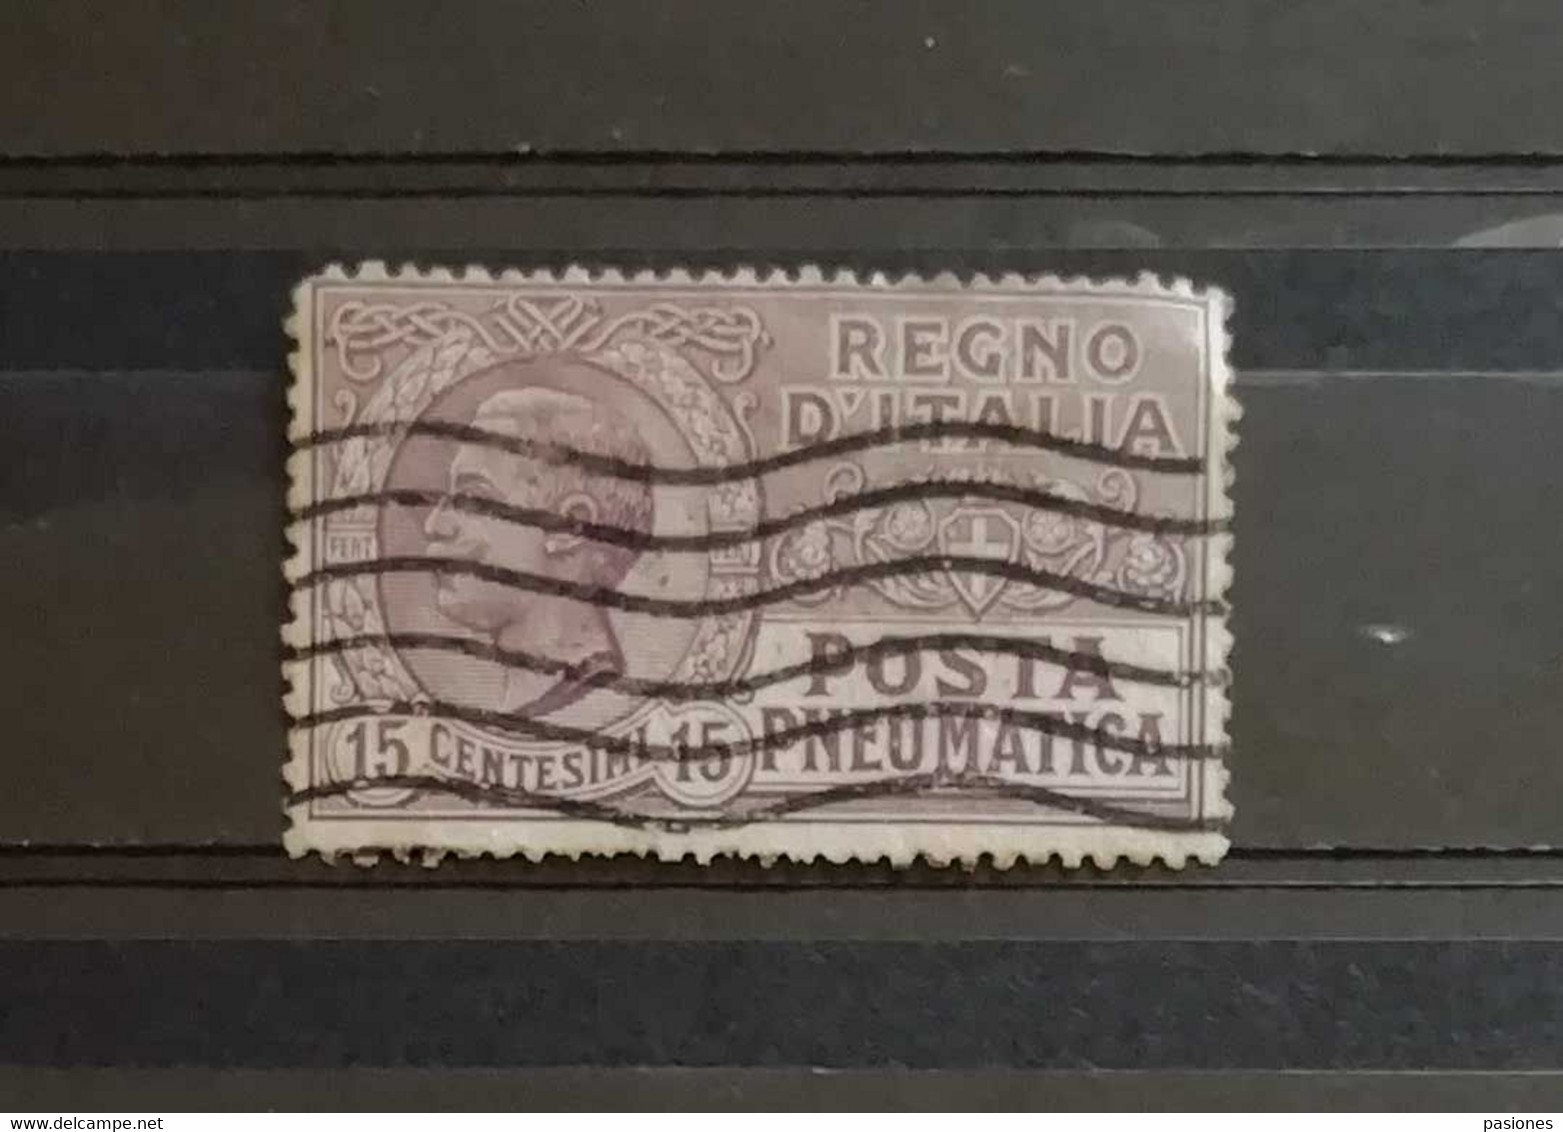 Regno D'Italia Vittorio Emanuele III 1913-23 N. 2 Posta Pneumatica Cent. 15 Usato - Pneumatic Mail